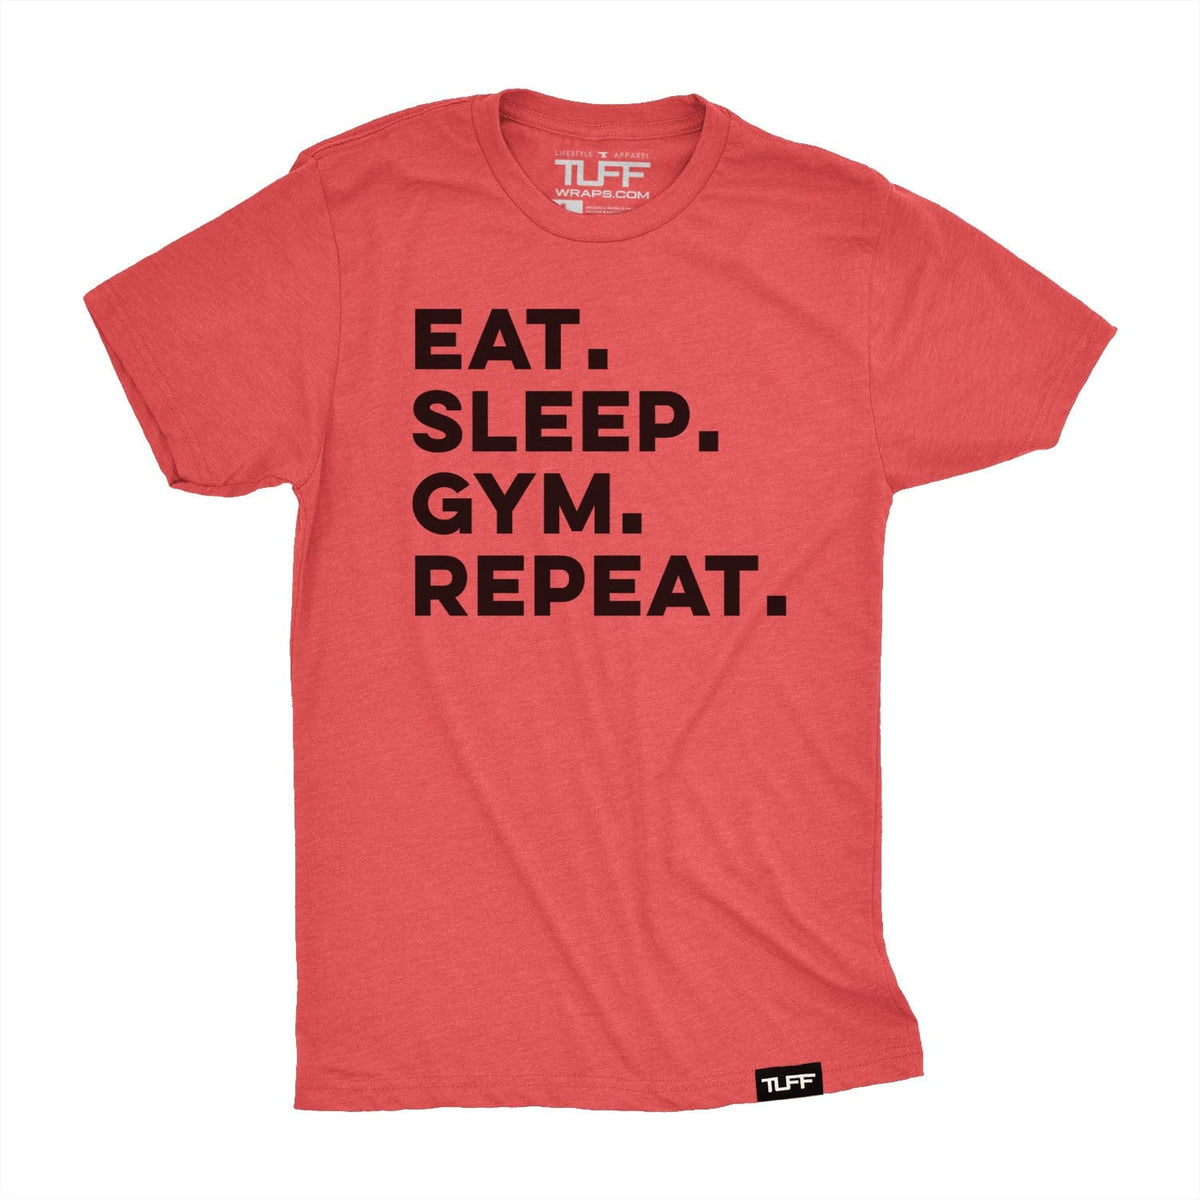 Eat. Sleep. Gym. Repeat. Tee S / Vintage Red TuffWraps.com